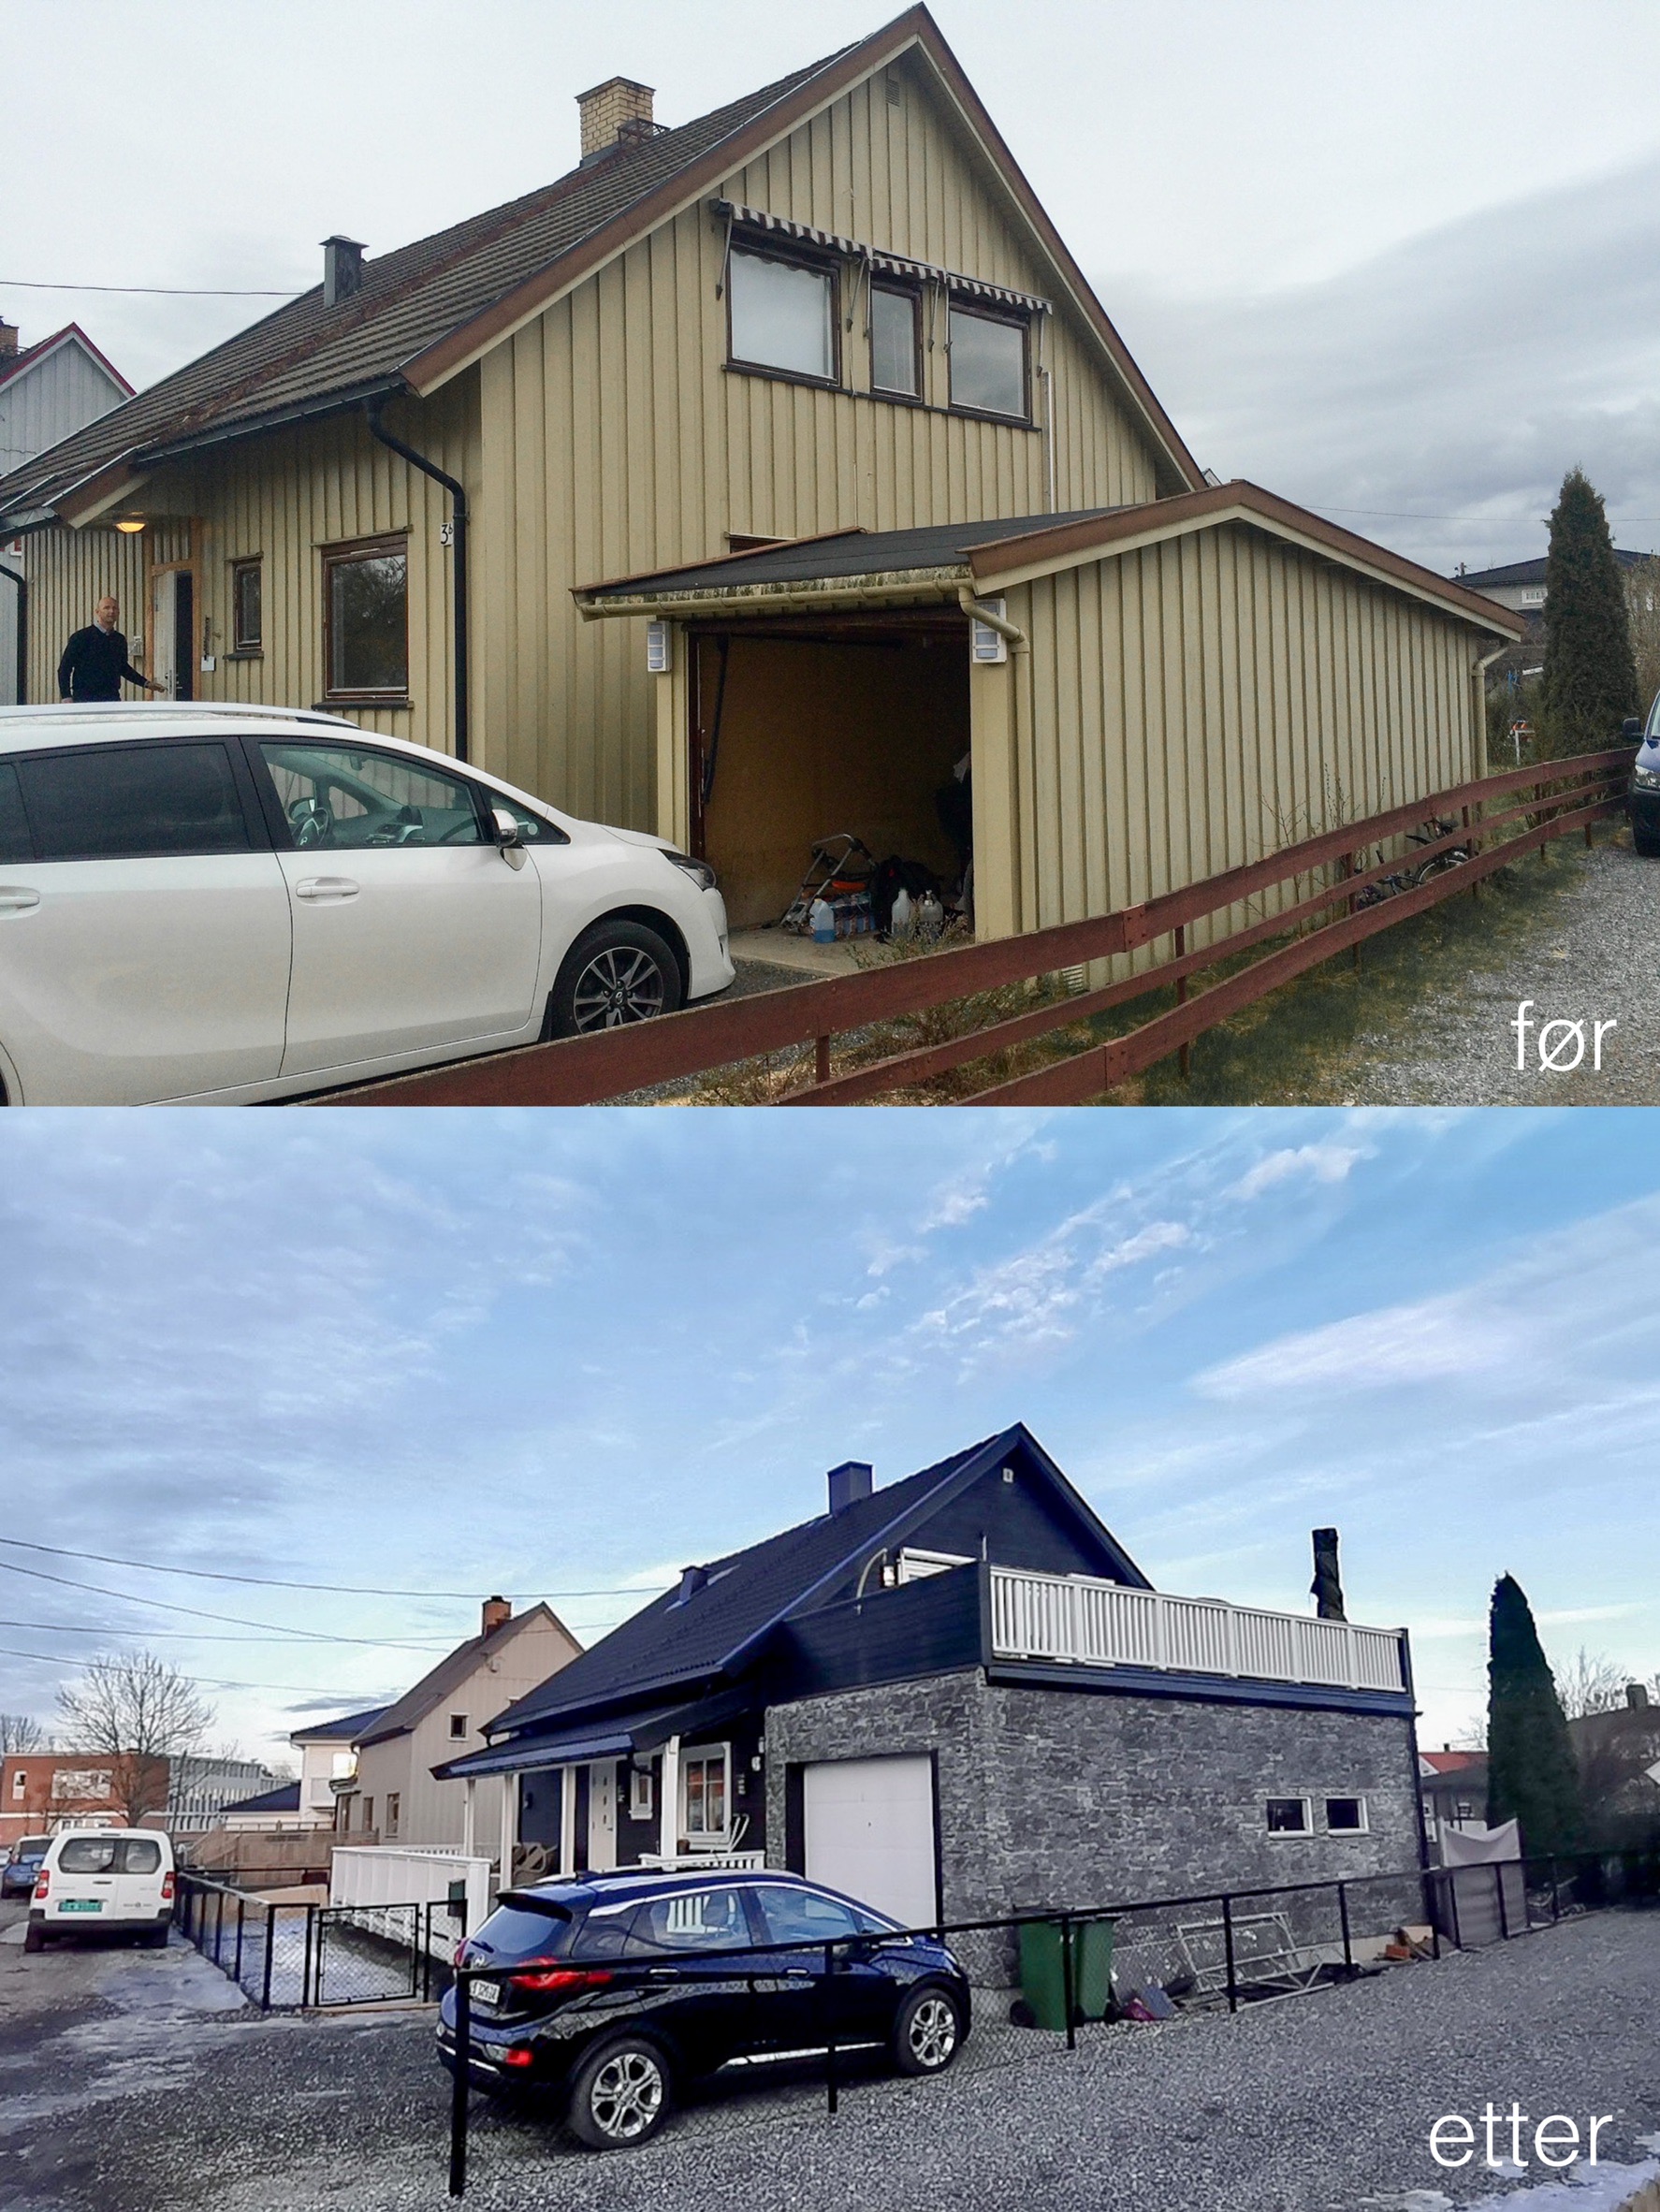 Før og etter bilde av et byggeprosjekt i Lillestrøm - Arkitekttegninger og byggesøknadstegninger av tilbygg med garasje